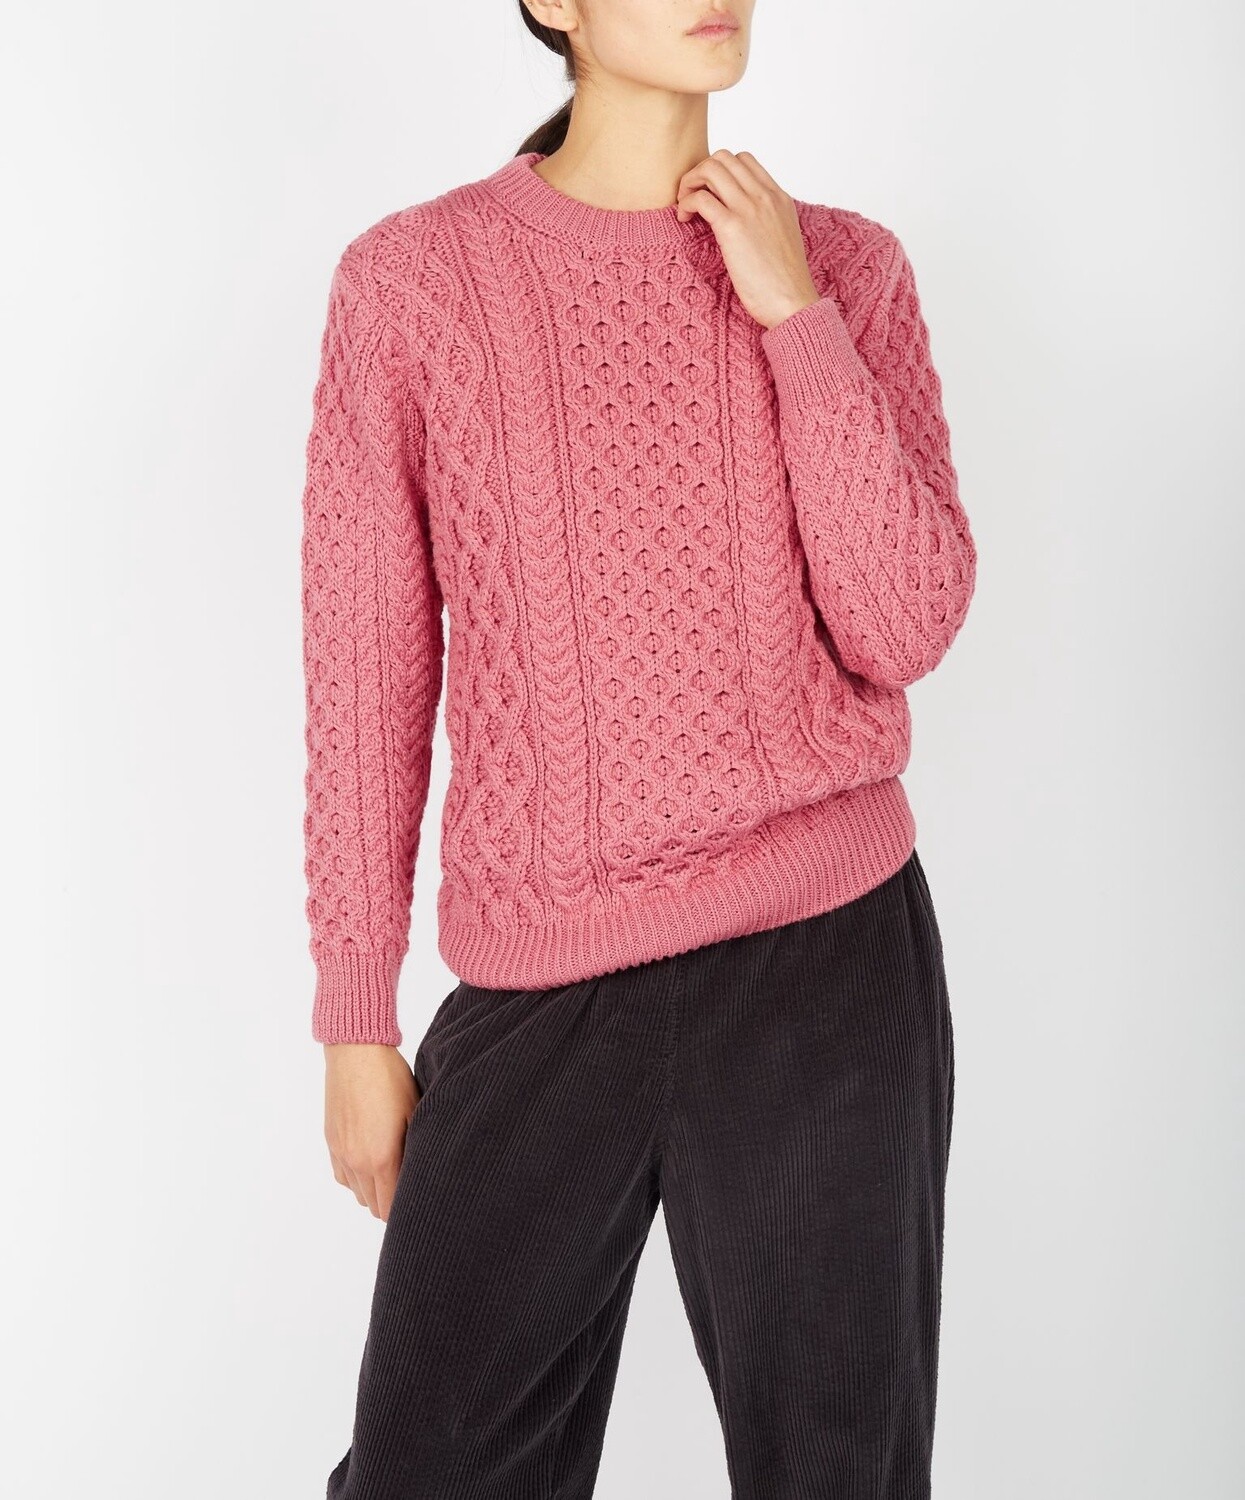 Blasket Honeycomb Stitch Aran Sweater - Rosa Pink, Size: XS